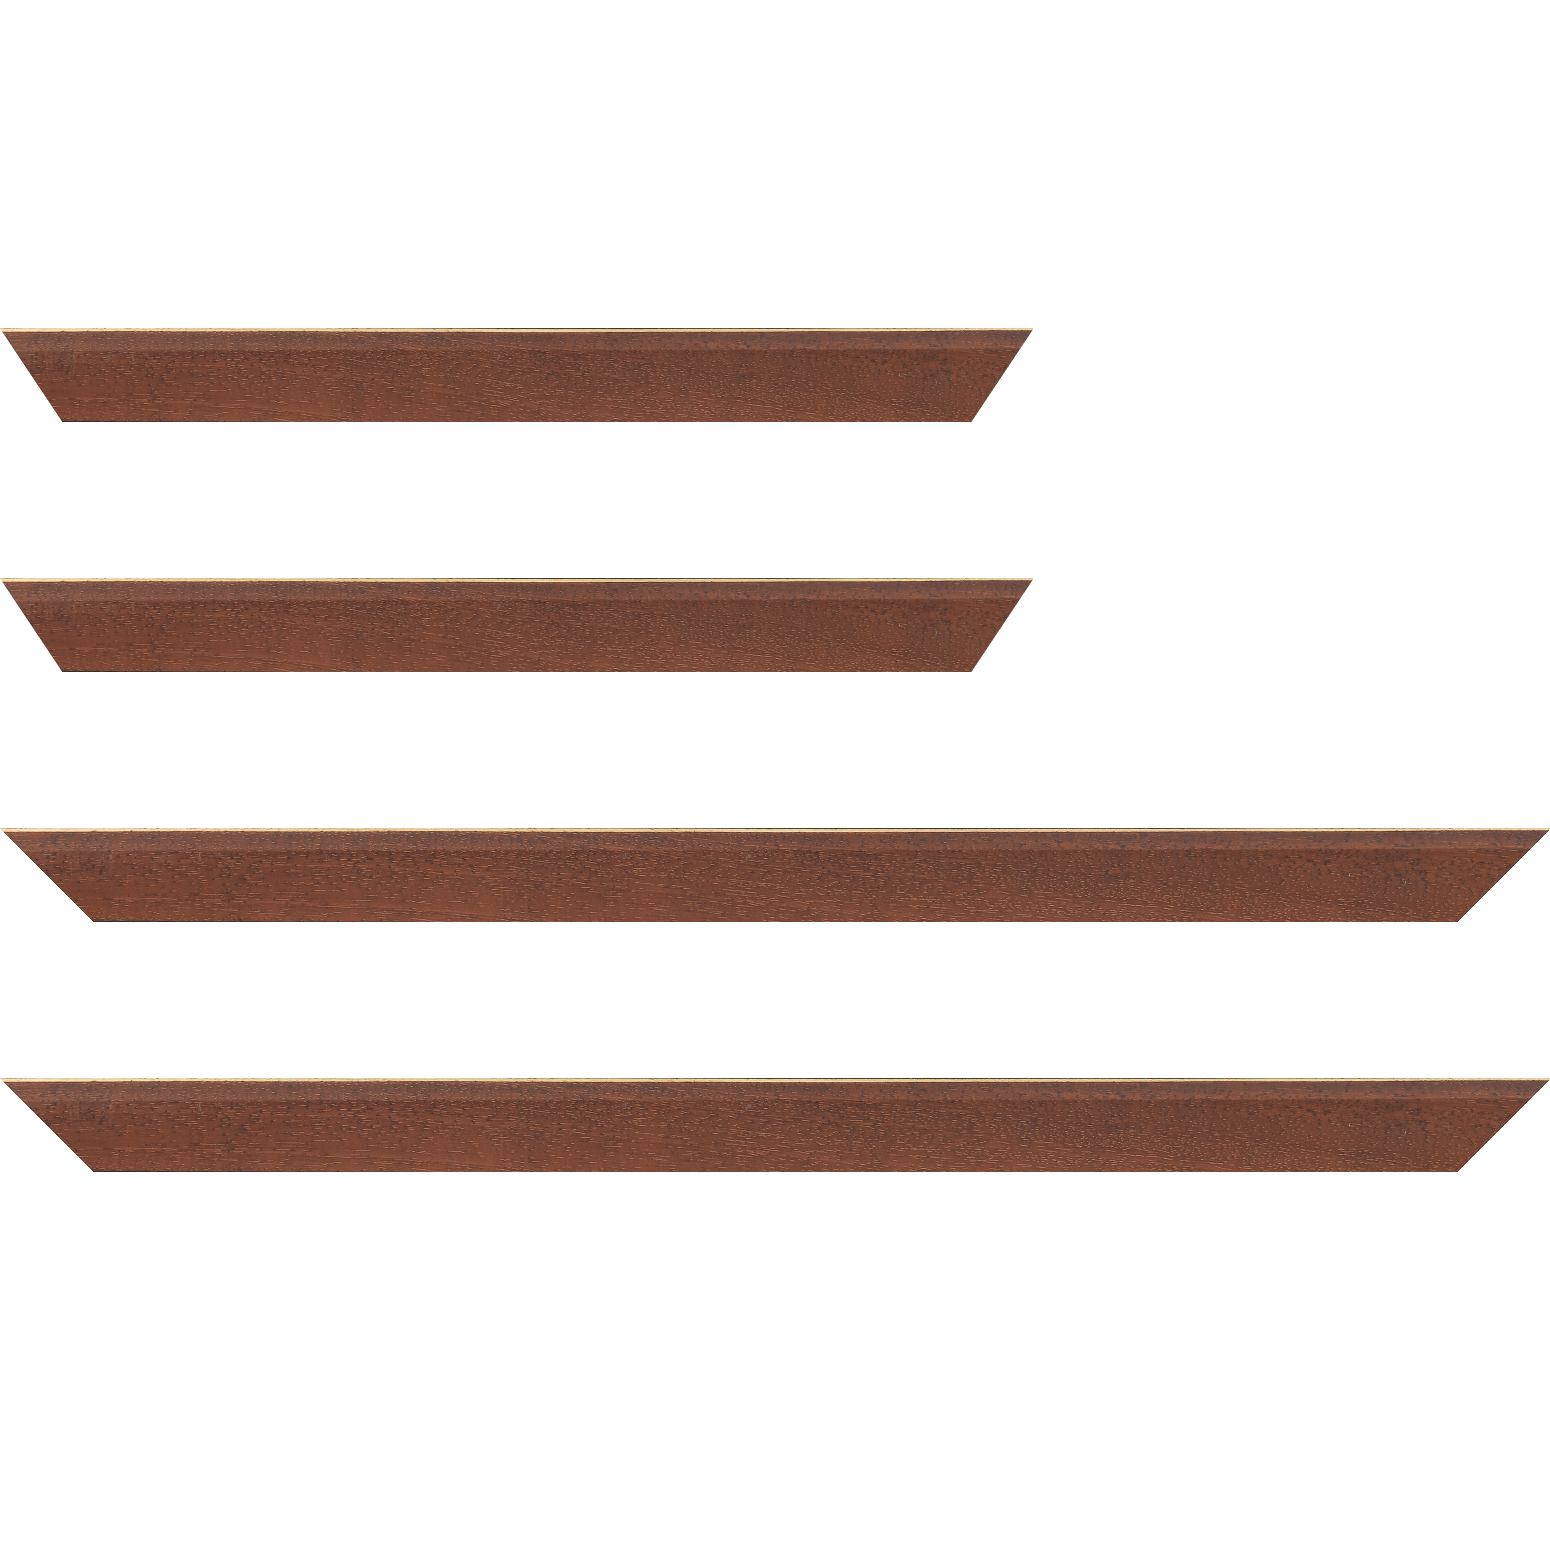 Baguette bois profil plat escalier largeur 3cm couleur marron miel satiné filet créme extérieur - 59.4x84.1